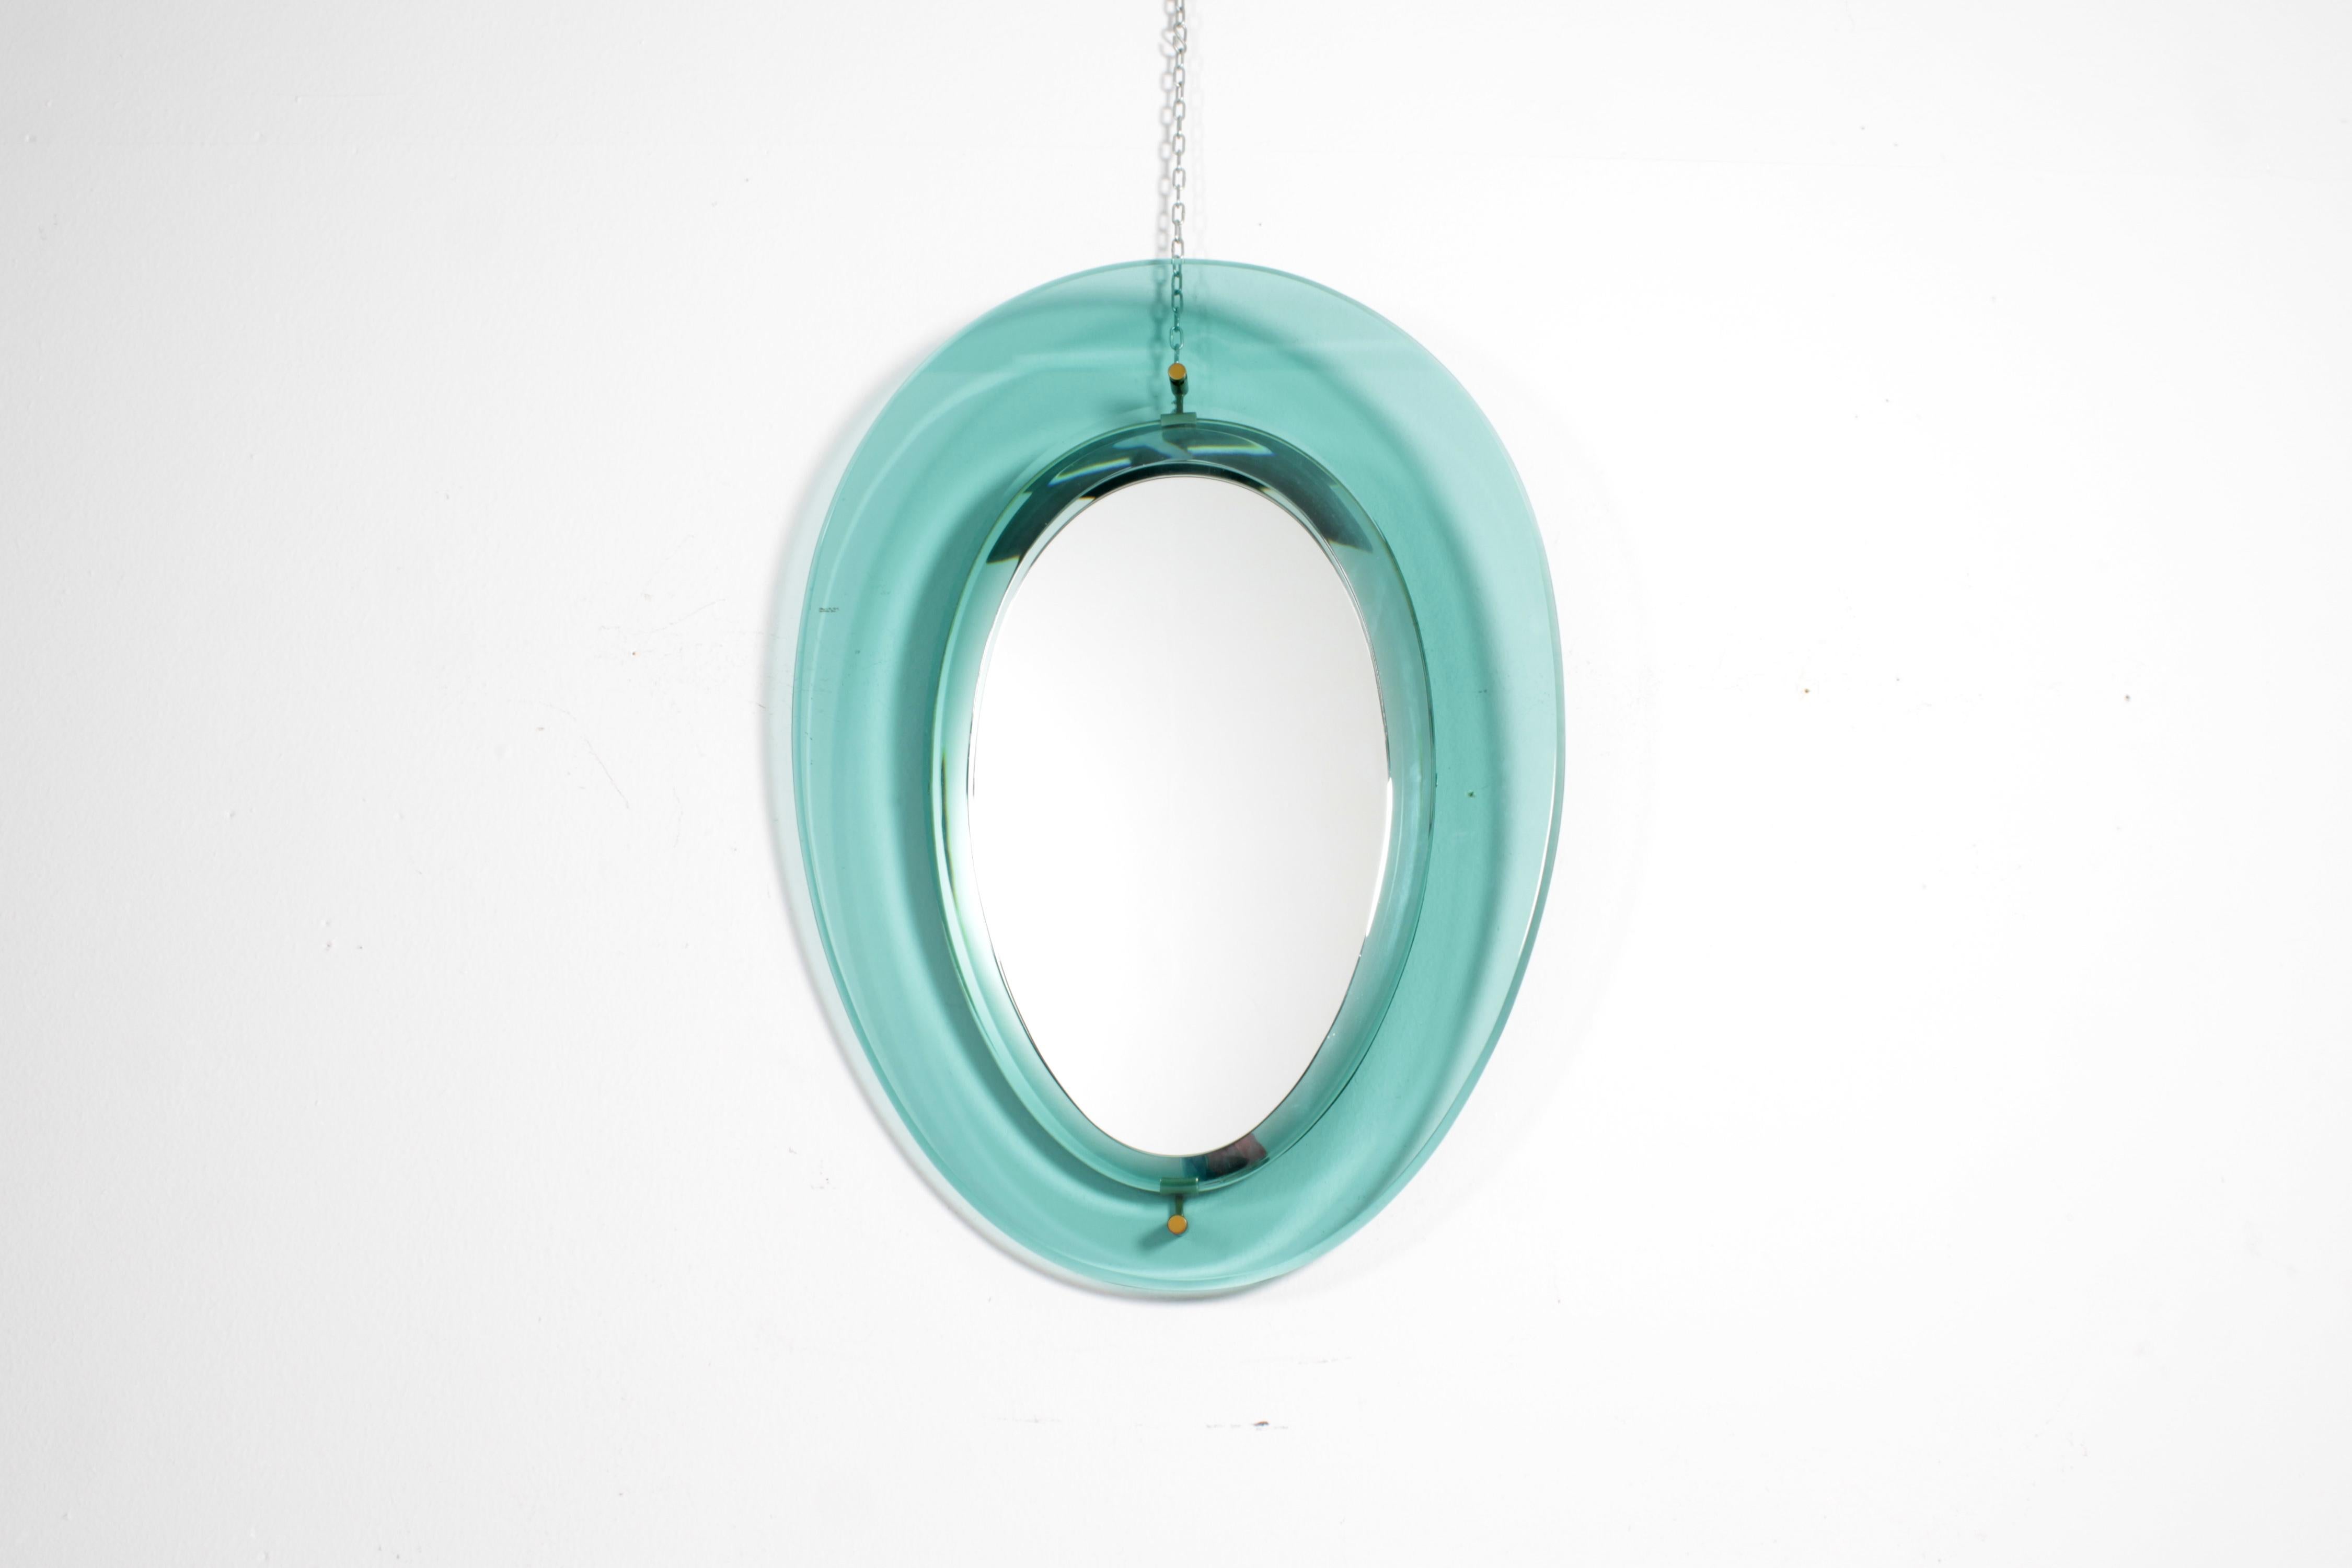 Wunderschöner ovaler Spiegel mit nilgrünem Glasrahmen, scharf abgeschrägtem Rand, verspiegeltem Glas. Details aus Messing. Mod. 